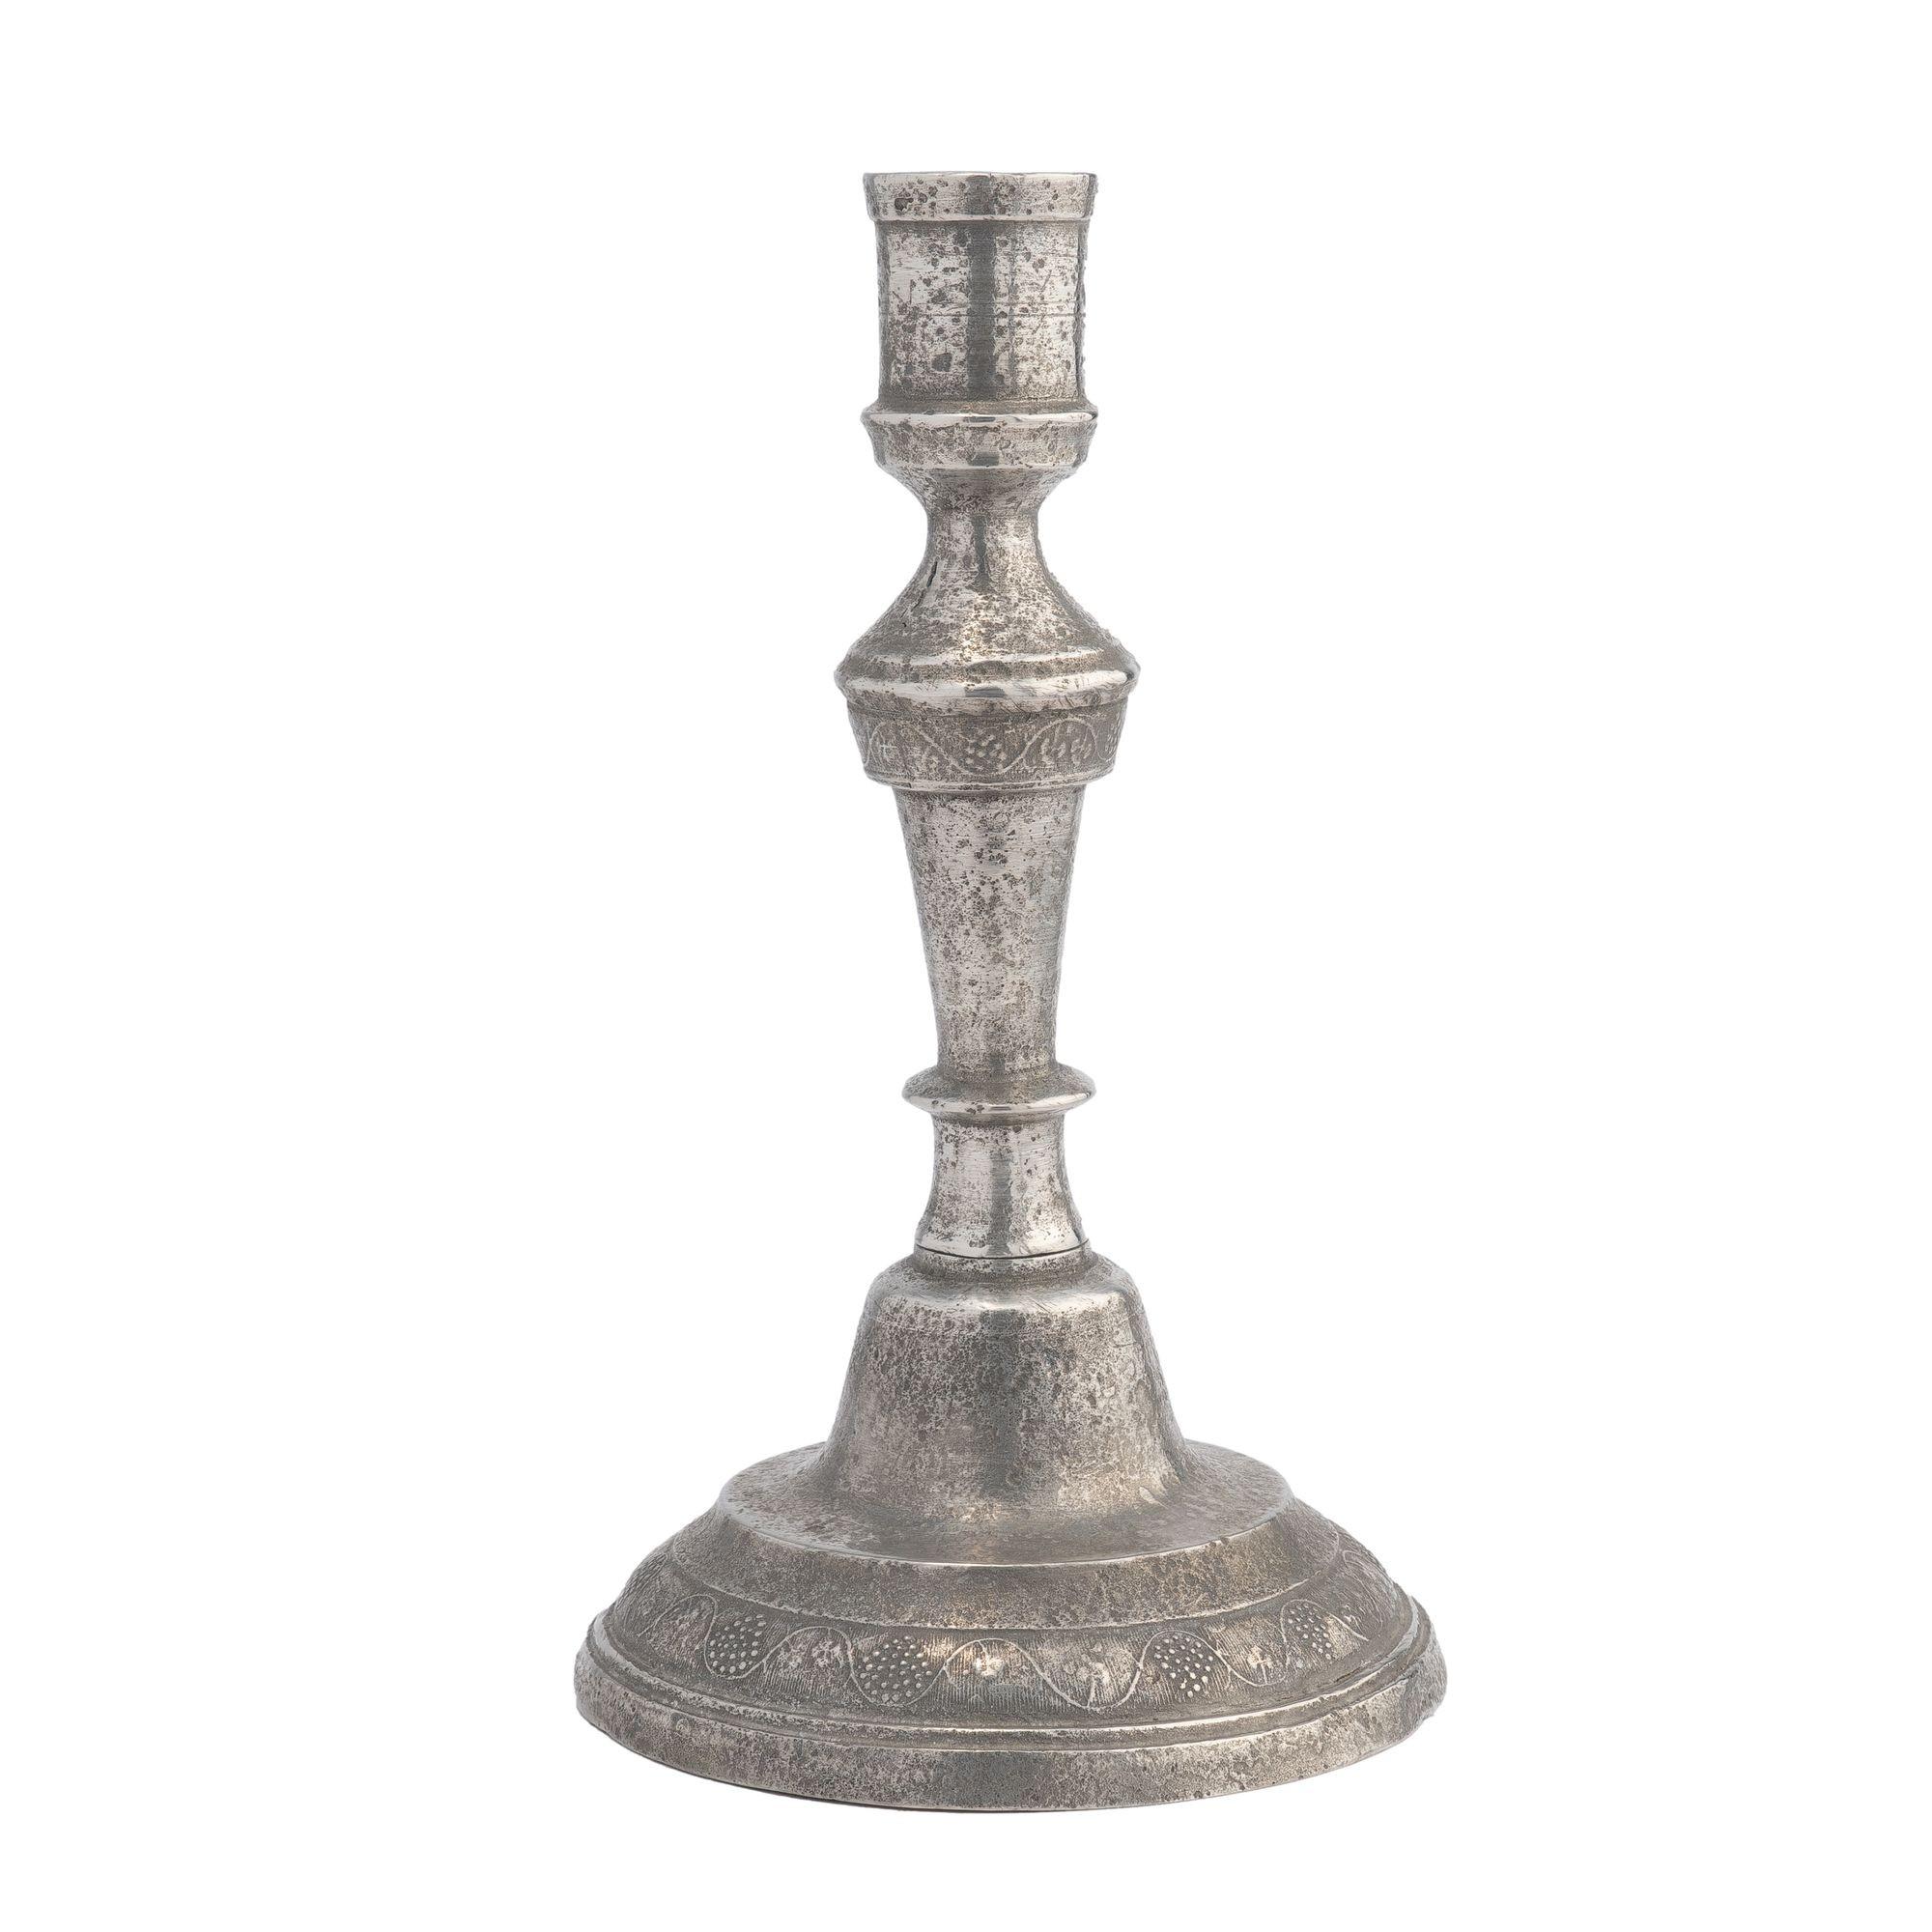 Kontinentaler Zinnguss-Kerzenhalter mit zartem Weinrebenmotiv um den kreisförmigen gewölbten Sockel und auf dem zylindrischen Kragen zwischen dem Kerzenbecher und dem sich verjüngenden Schaft.

Frankreich, um 1770.